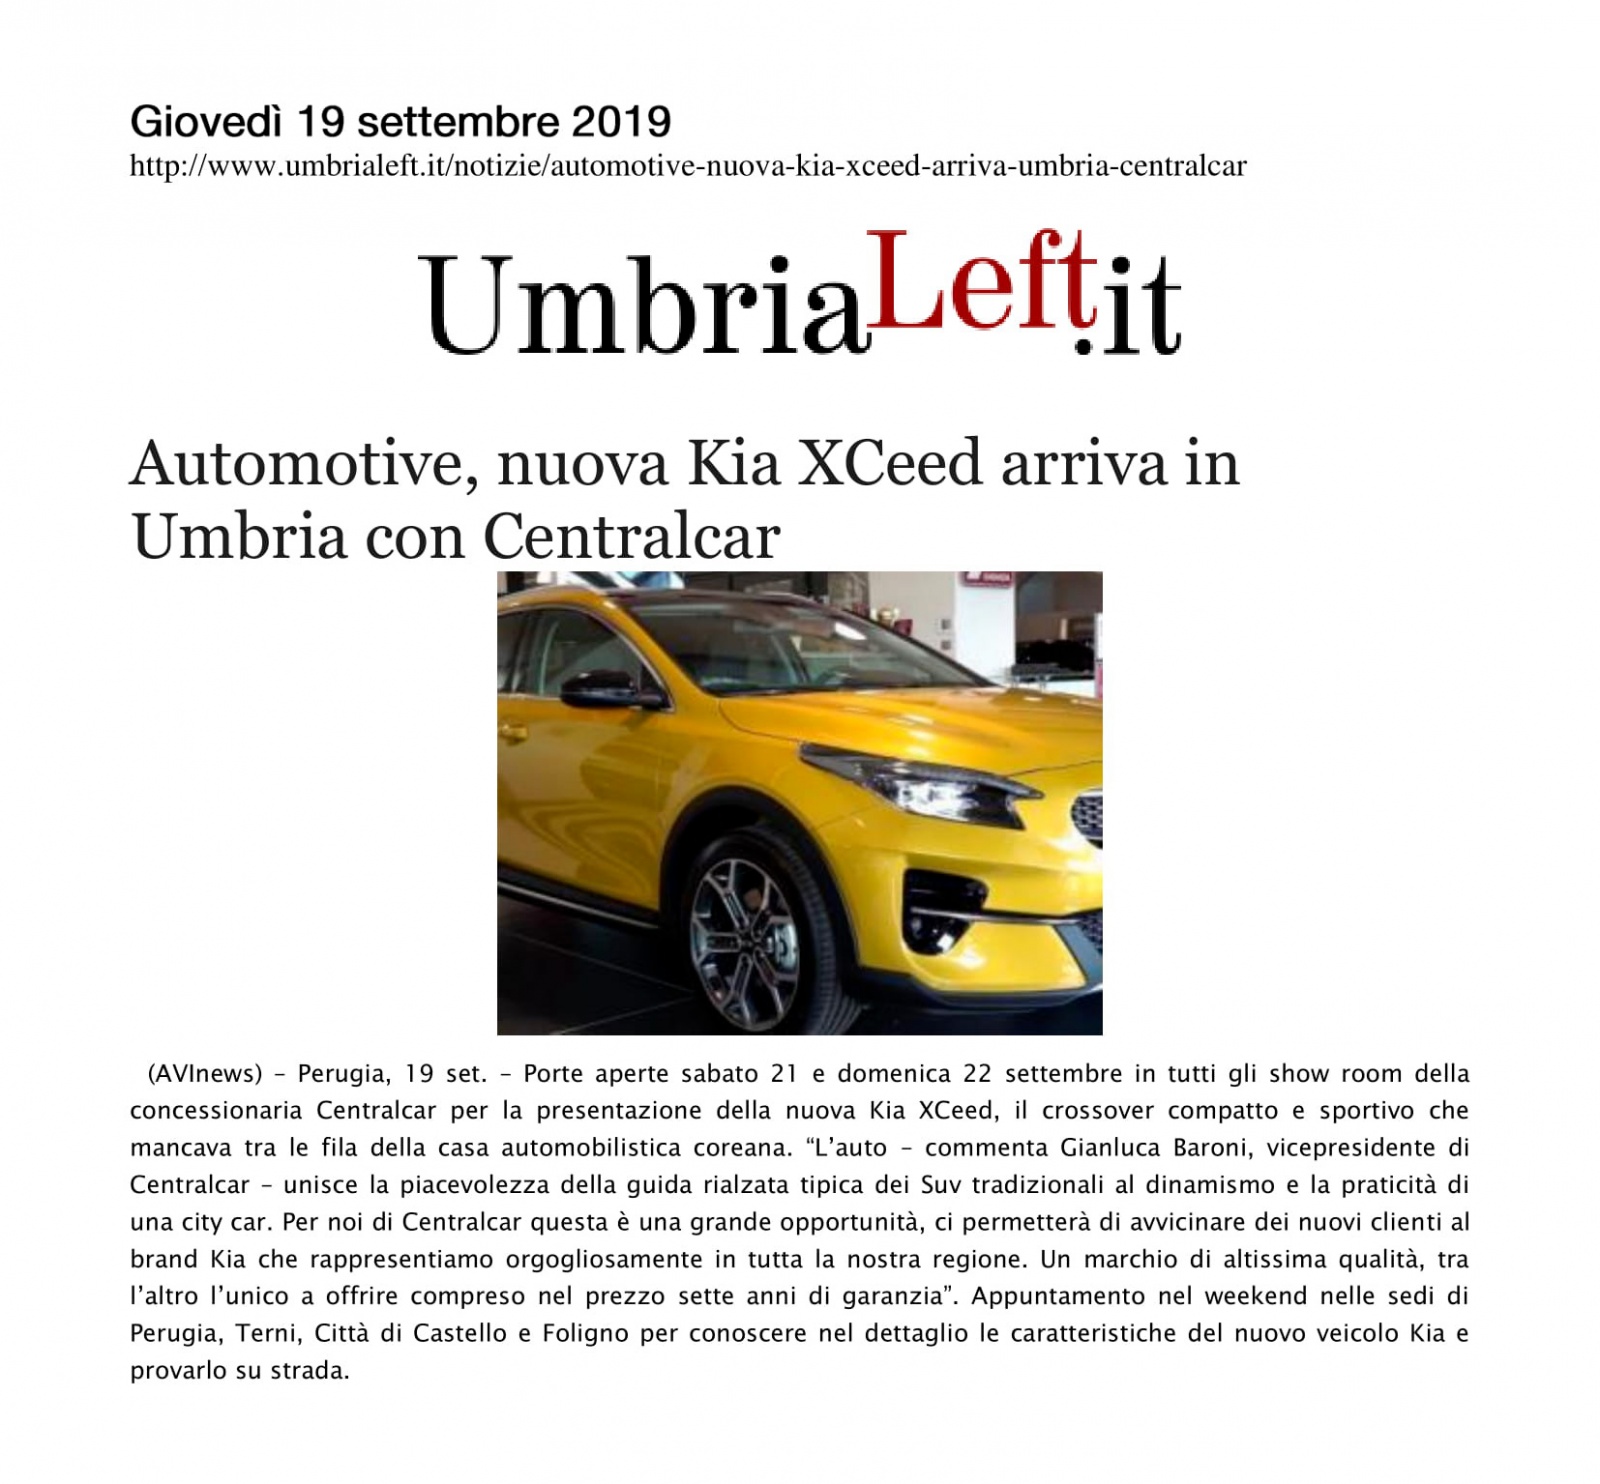 Automotive, nuova Kia XCeed arriva in Umbria con Centralcar